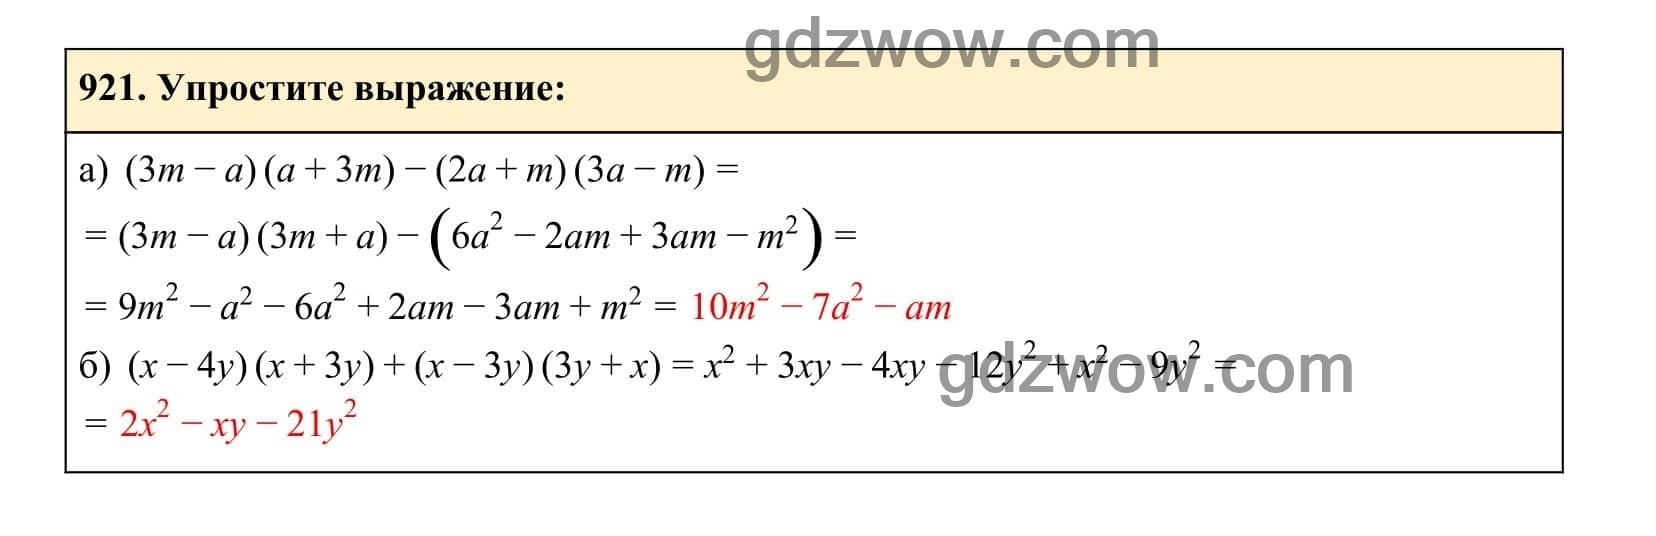 Упражнение 921 - ГДЗ по Алгебре 7 класс Учебник Макарычев (решебник) - GDZwow